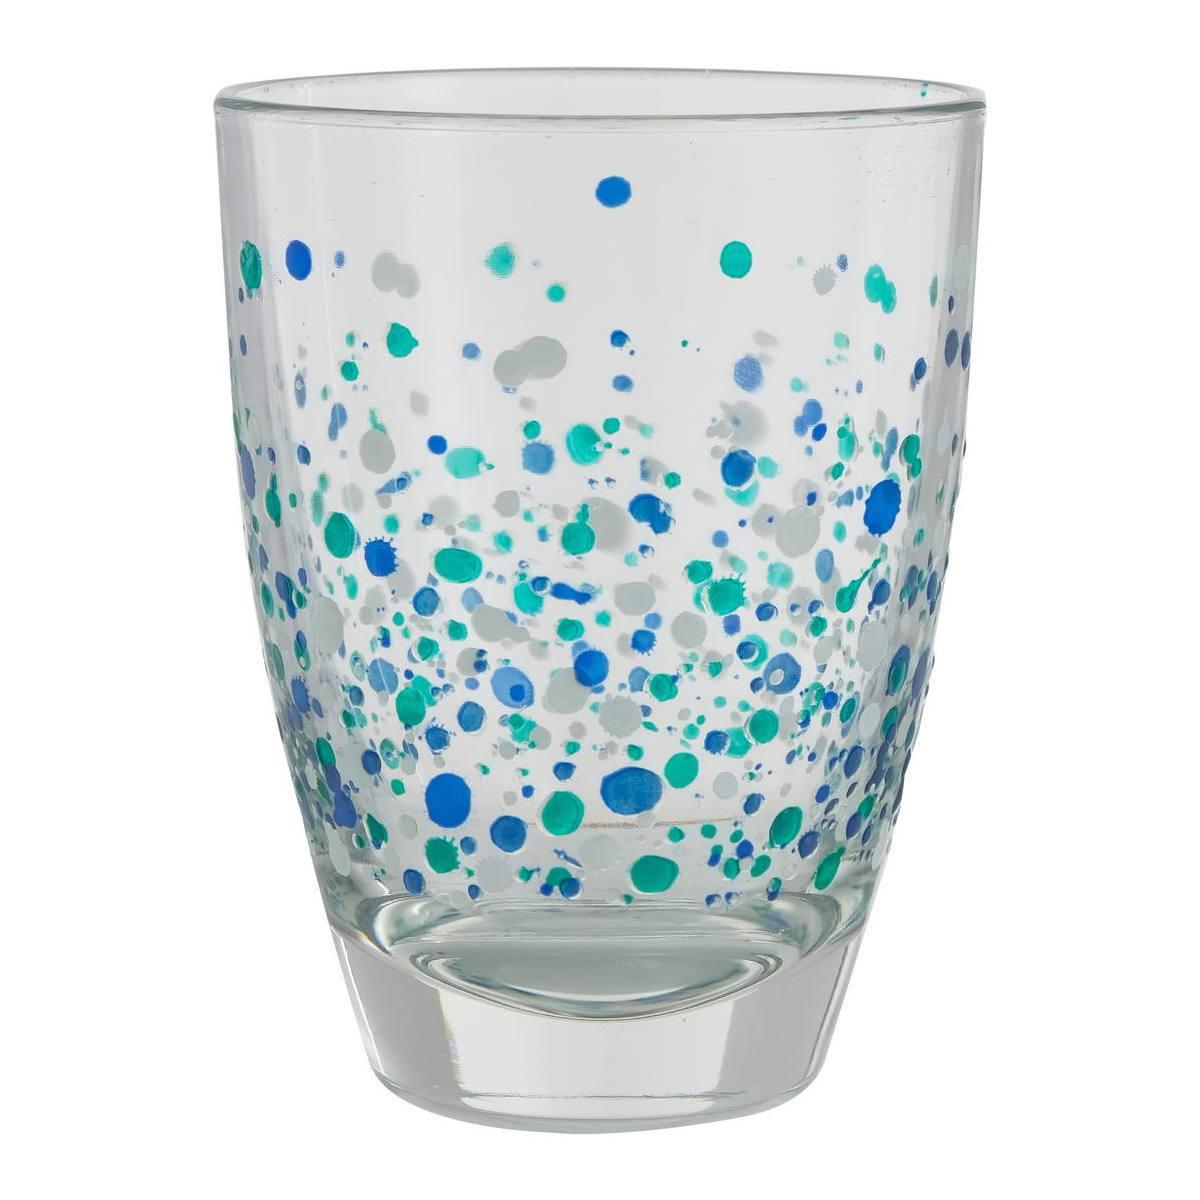 Montemaggi Bicchiere Vetro Acqua Murano Blu ml.250 pezzi 1 2205170000098  8001691974559